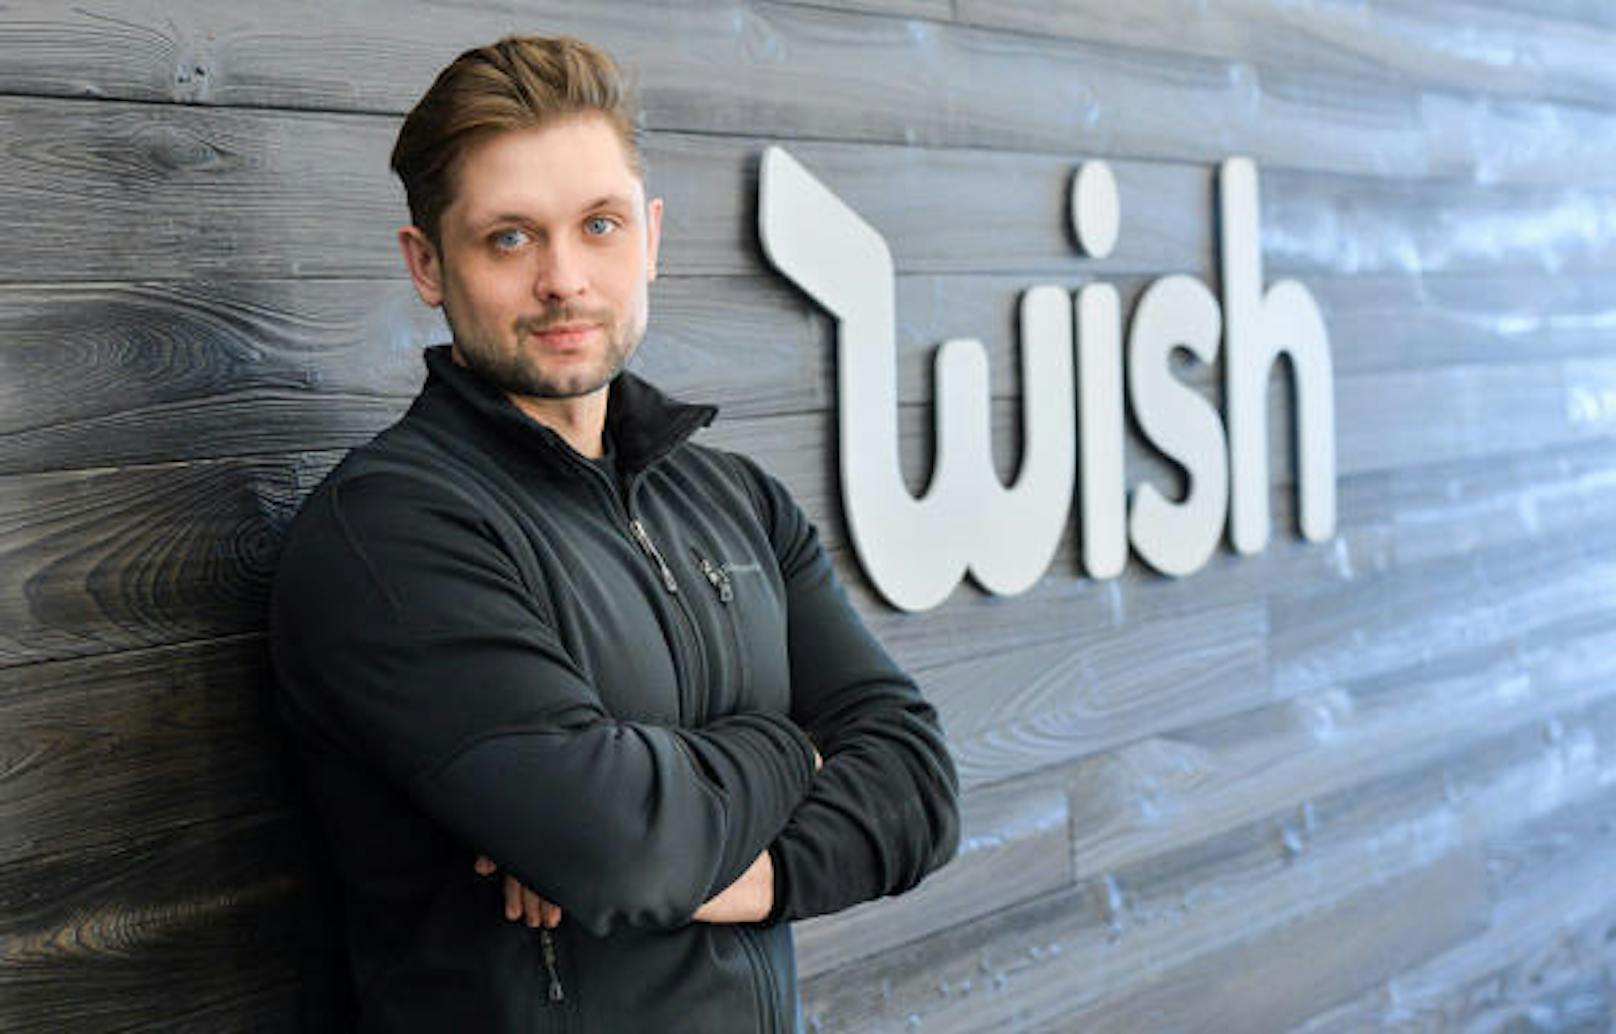 Der Gründer und CEO der Billig-Shopping-App Wish heißt Peter Szulczewski. Sein geschätztes Vermögen beläuft sich auf 1,4 Milliarden Dollar.